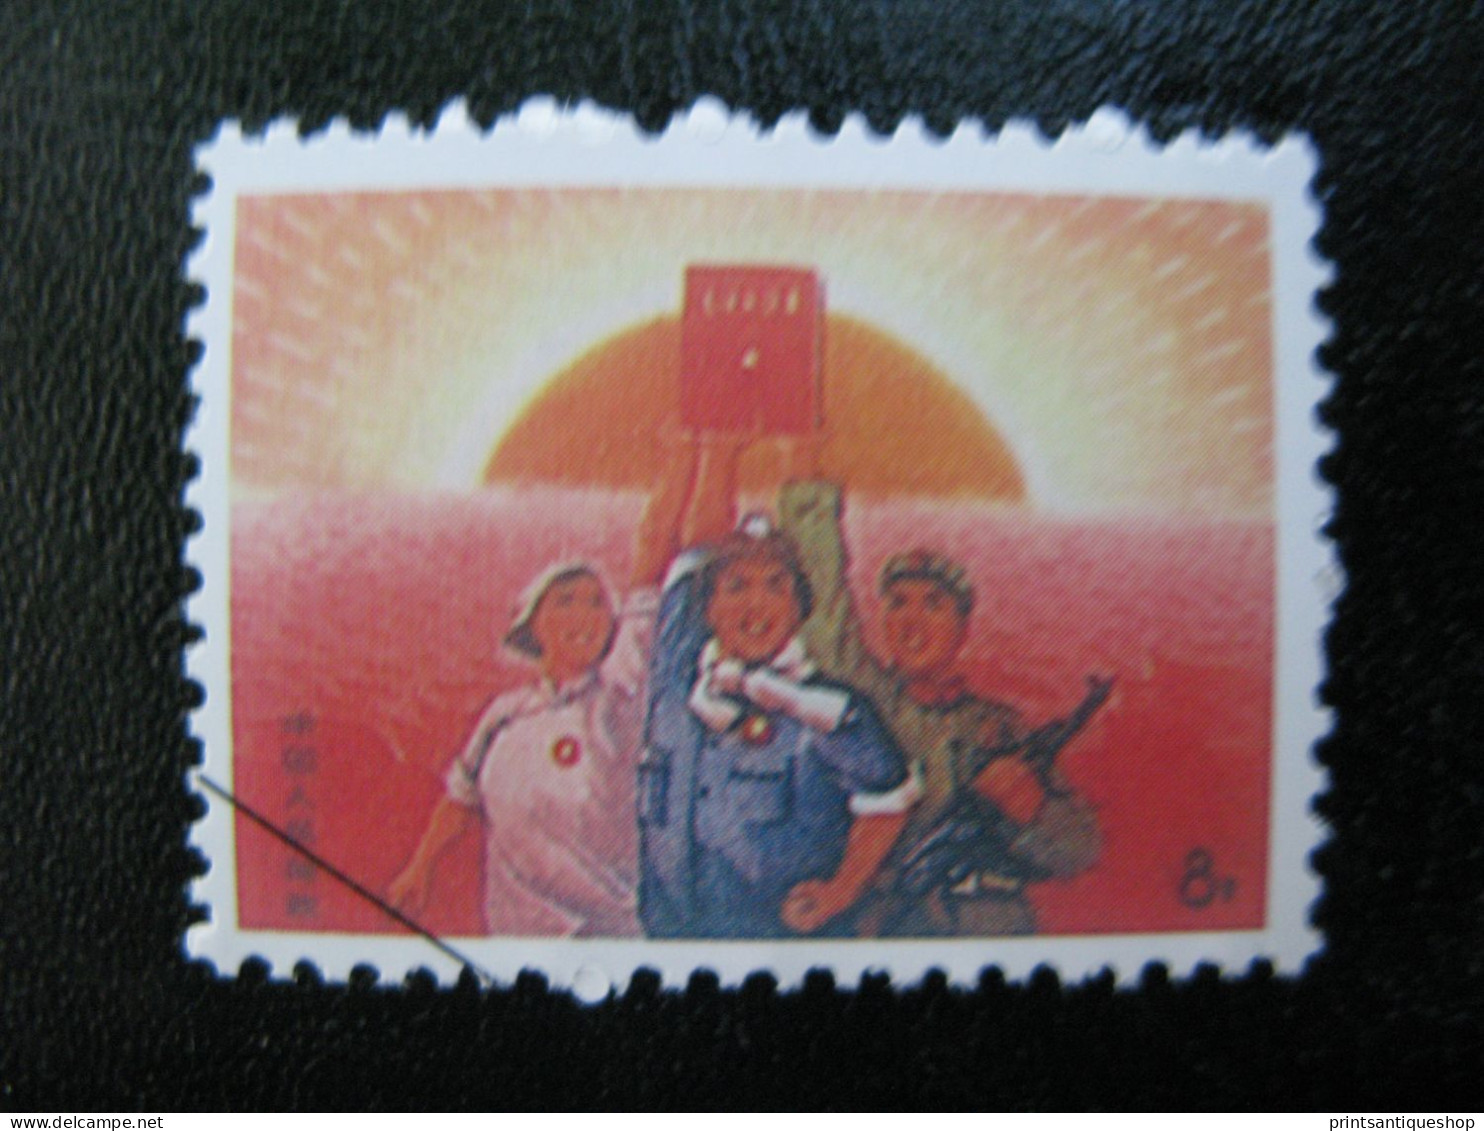 1968 China - Mao Tsé-tung Red Book - Michel #1028 - Usati